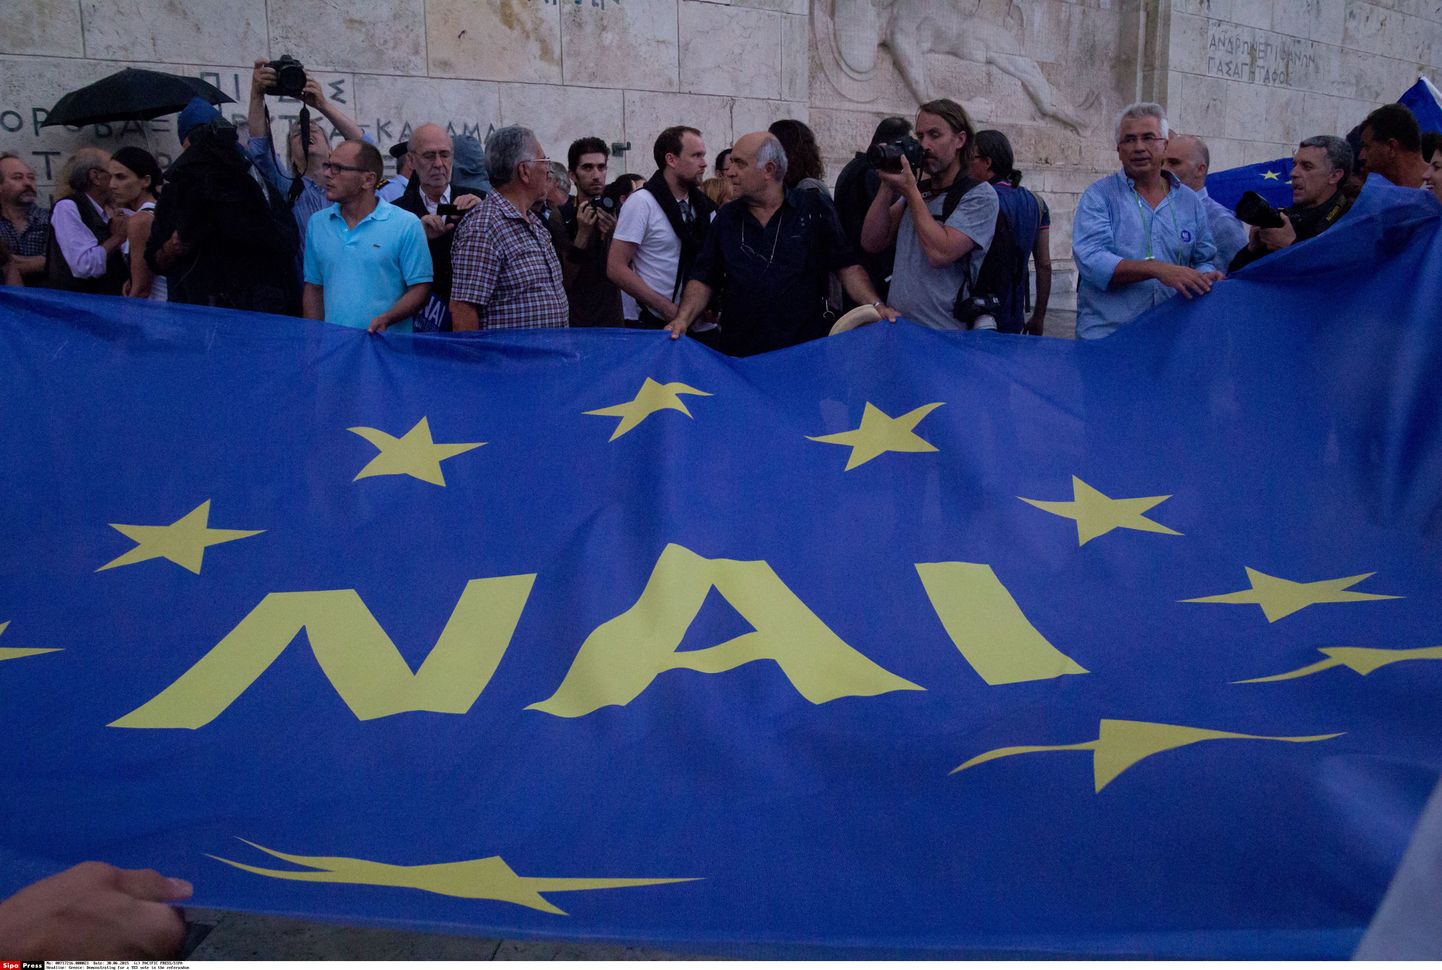 Eile toimunud eurotsooni pooldajate demonstratsioon, kus lipule on kirjutatud "jah".